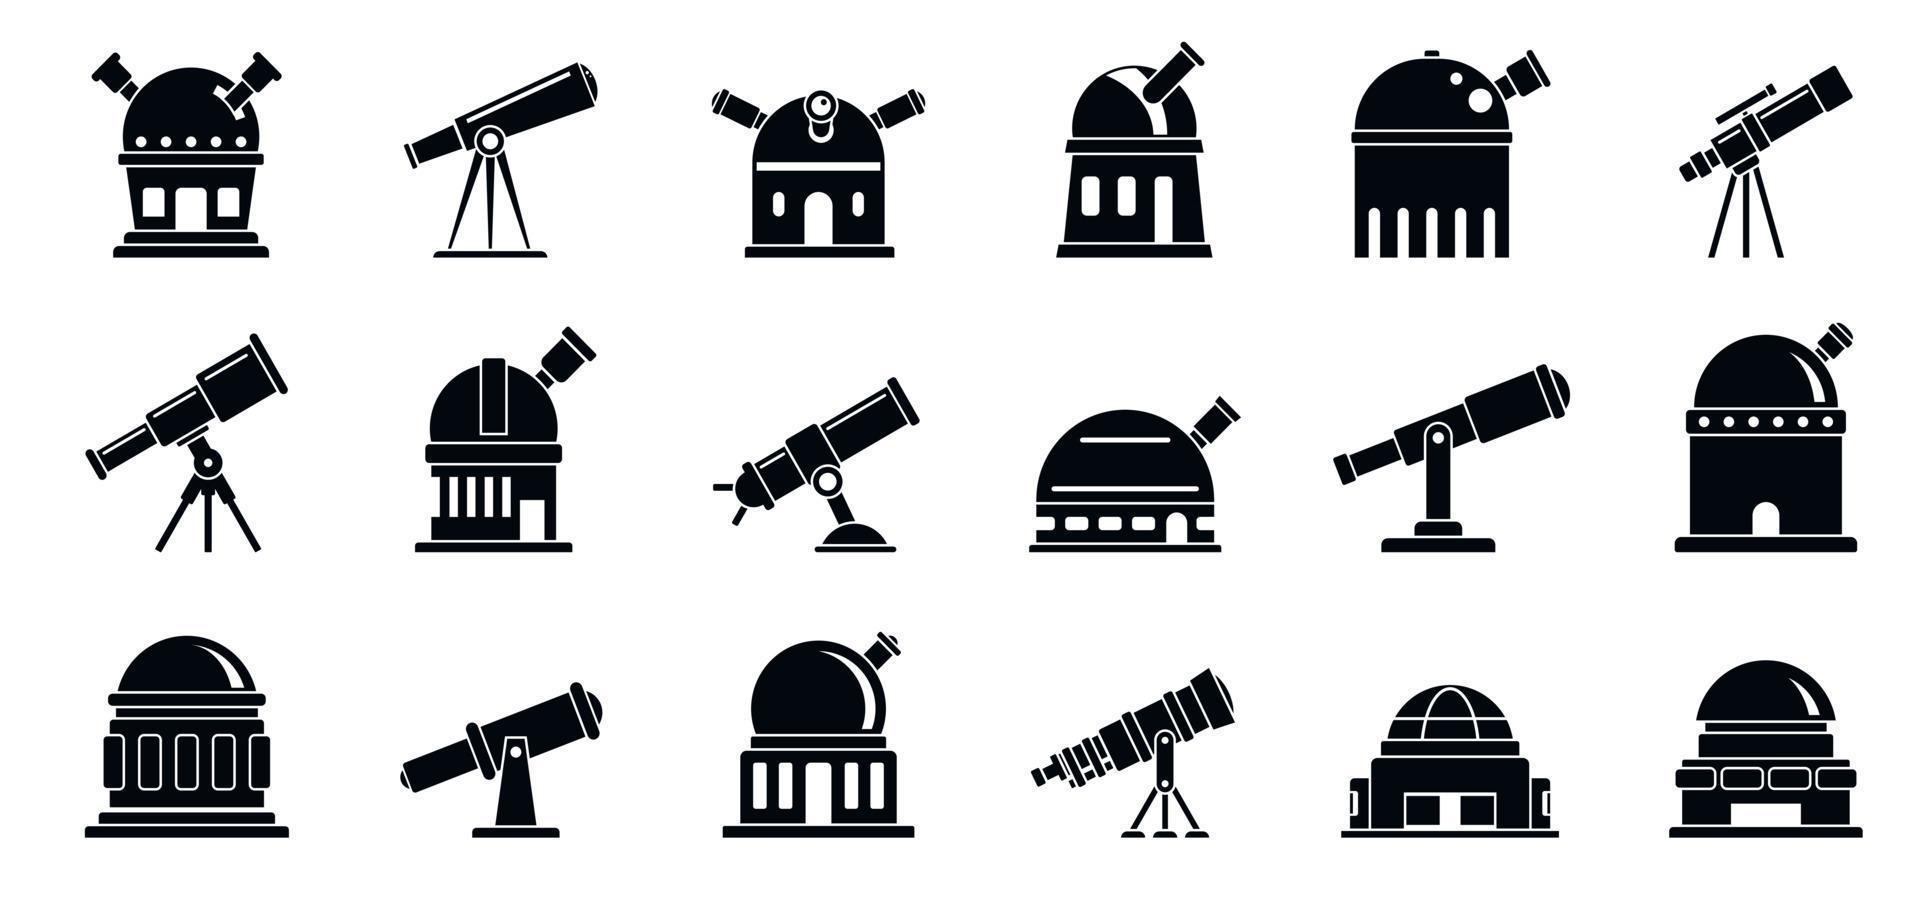 Planetariumssymbole gesetzt, einfacher Stil vektor